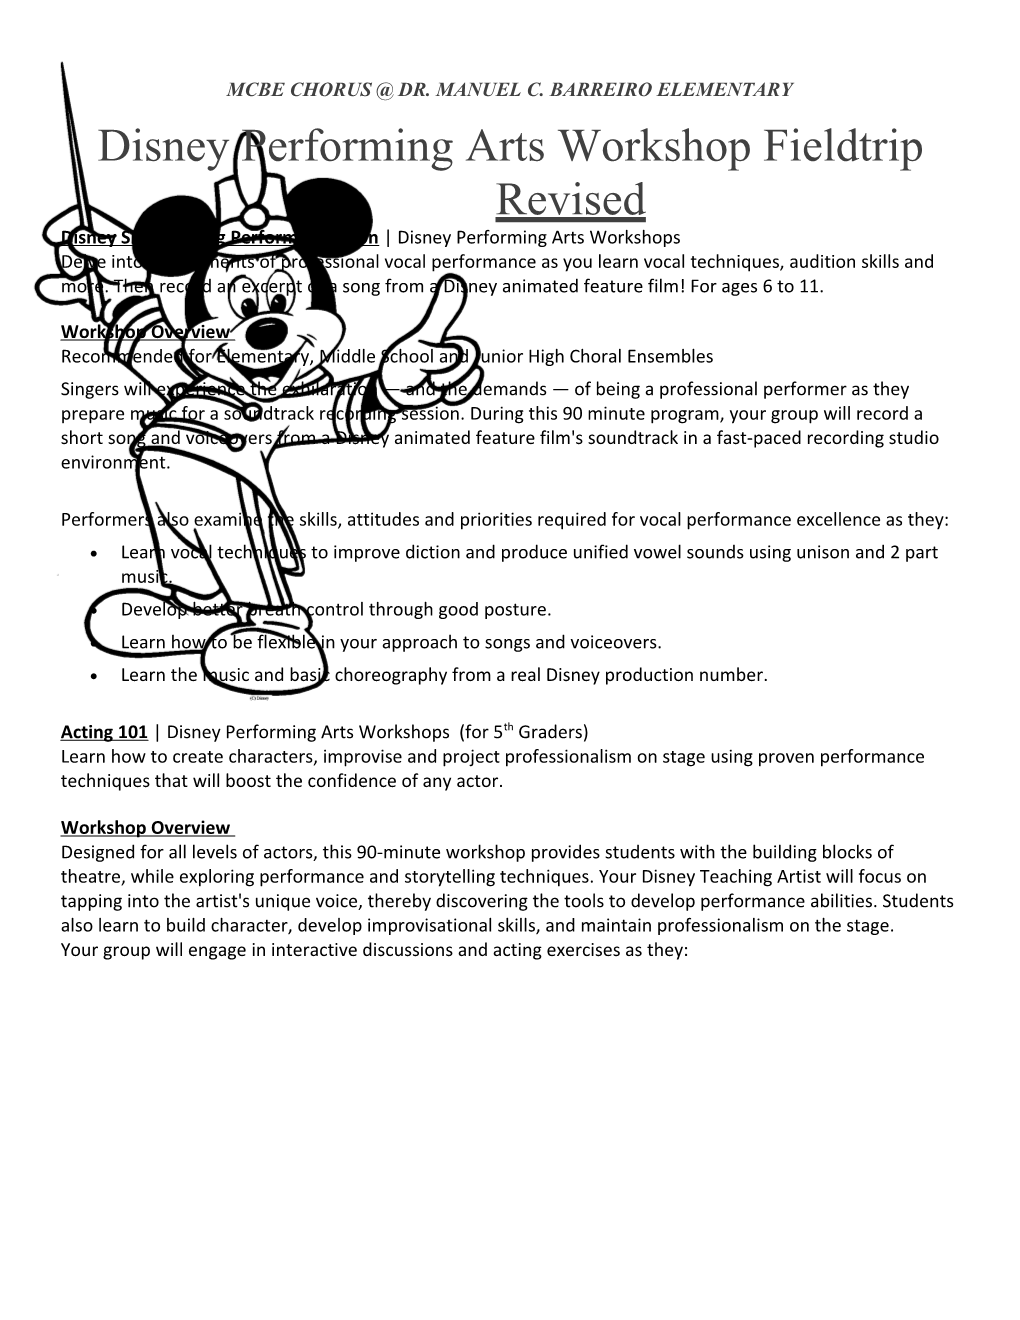 Disney Performing Arts Workshop Fieldtrip Revised